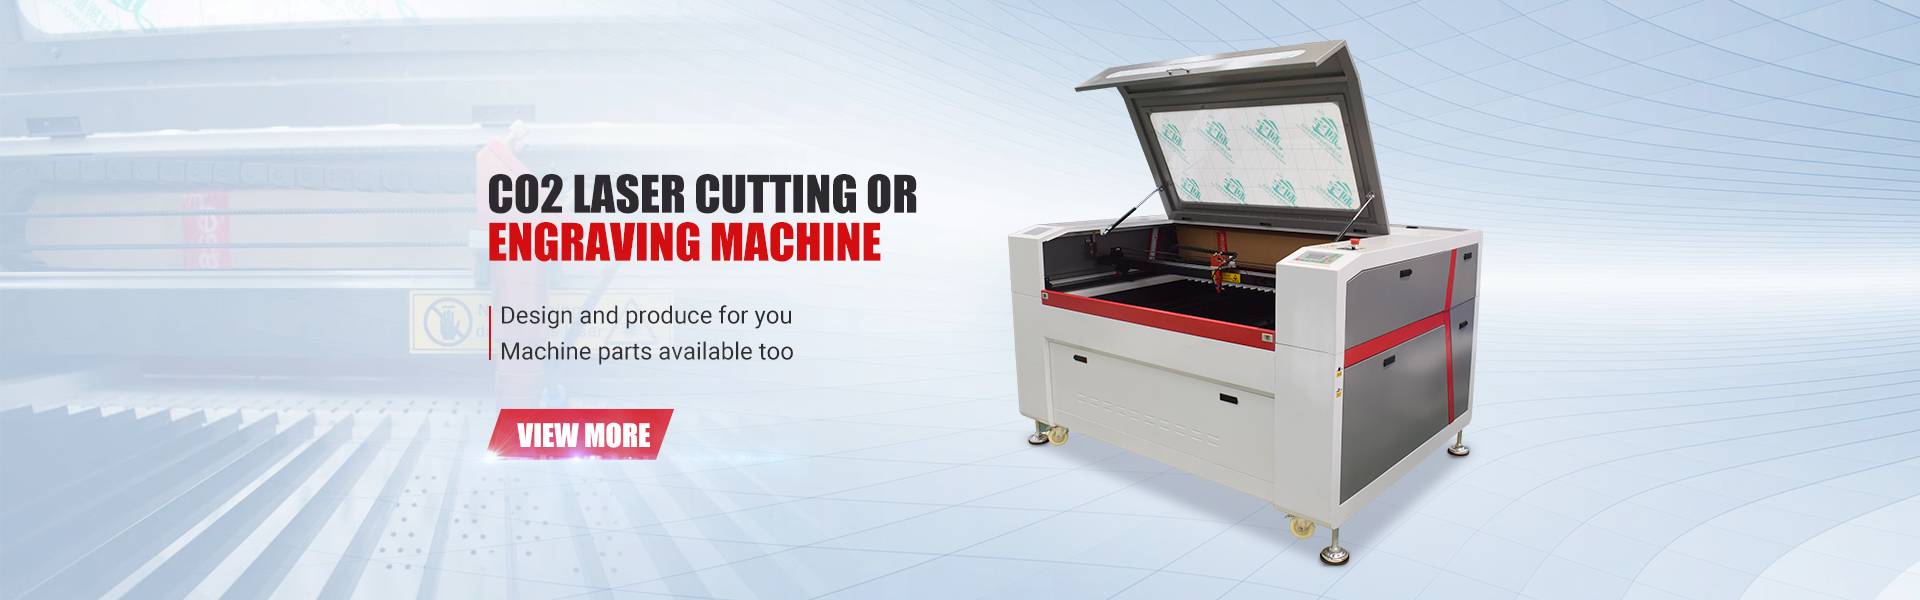 Nangungunang Nagbebenta CNC Metal Cutting Engraving Carving Machine 6090